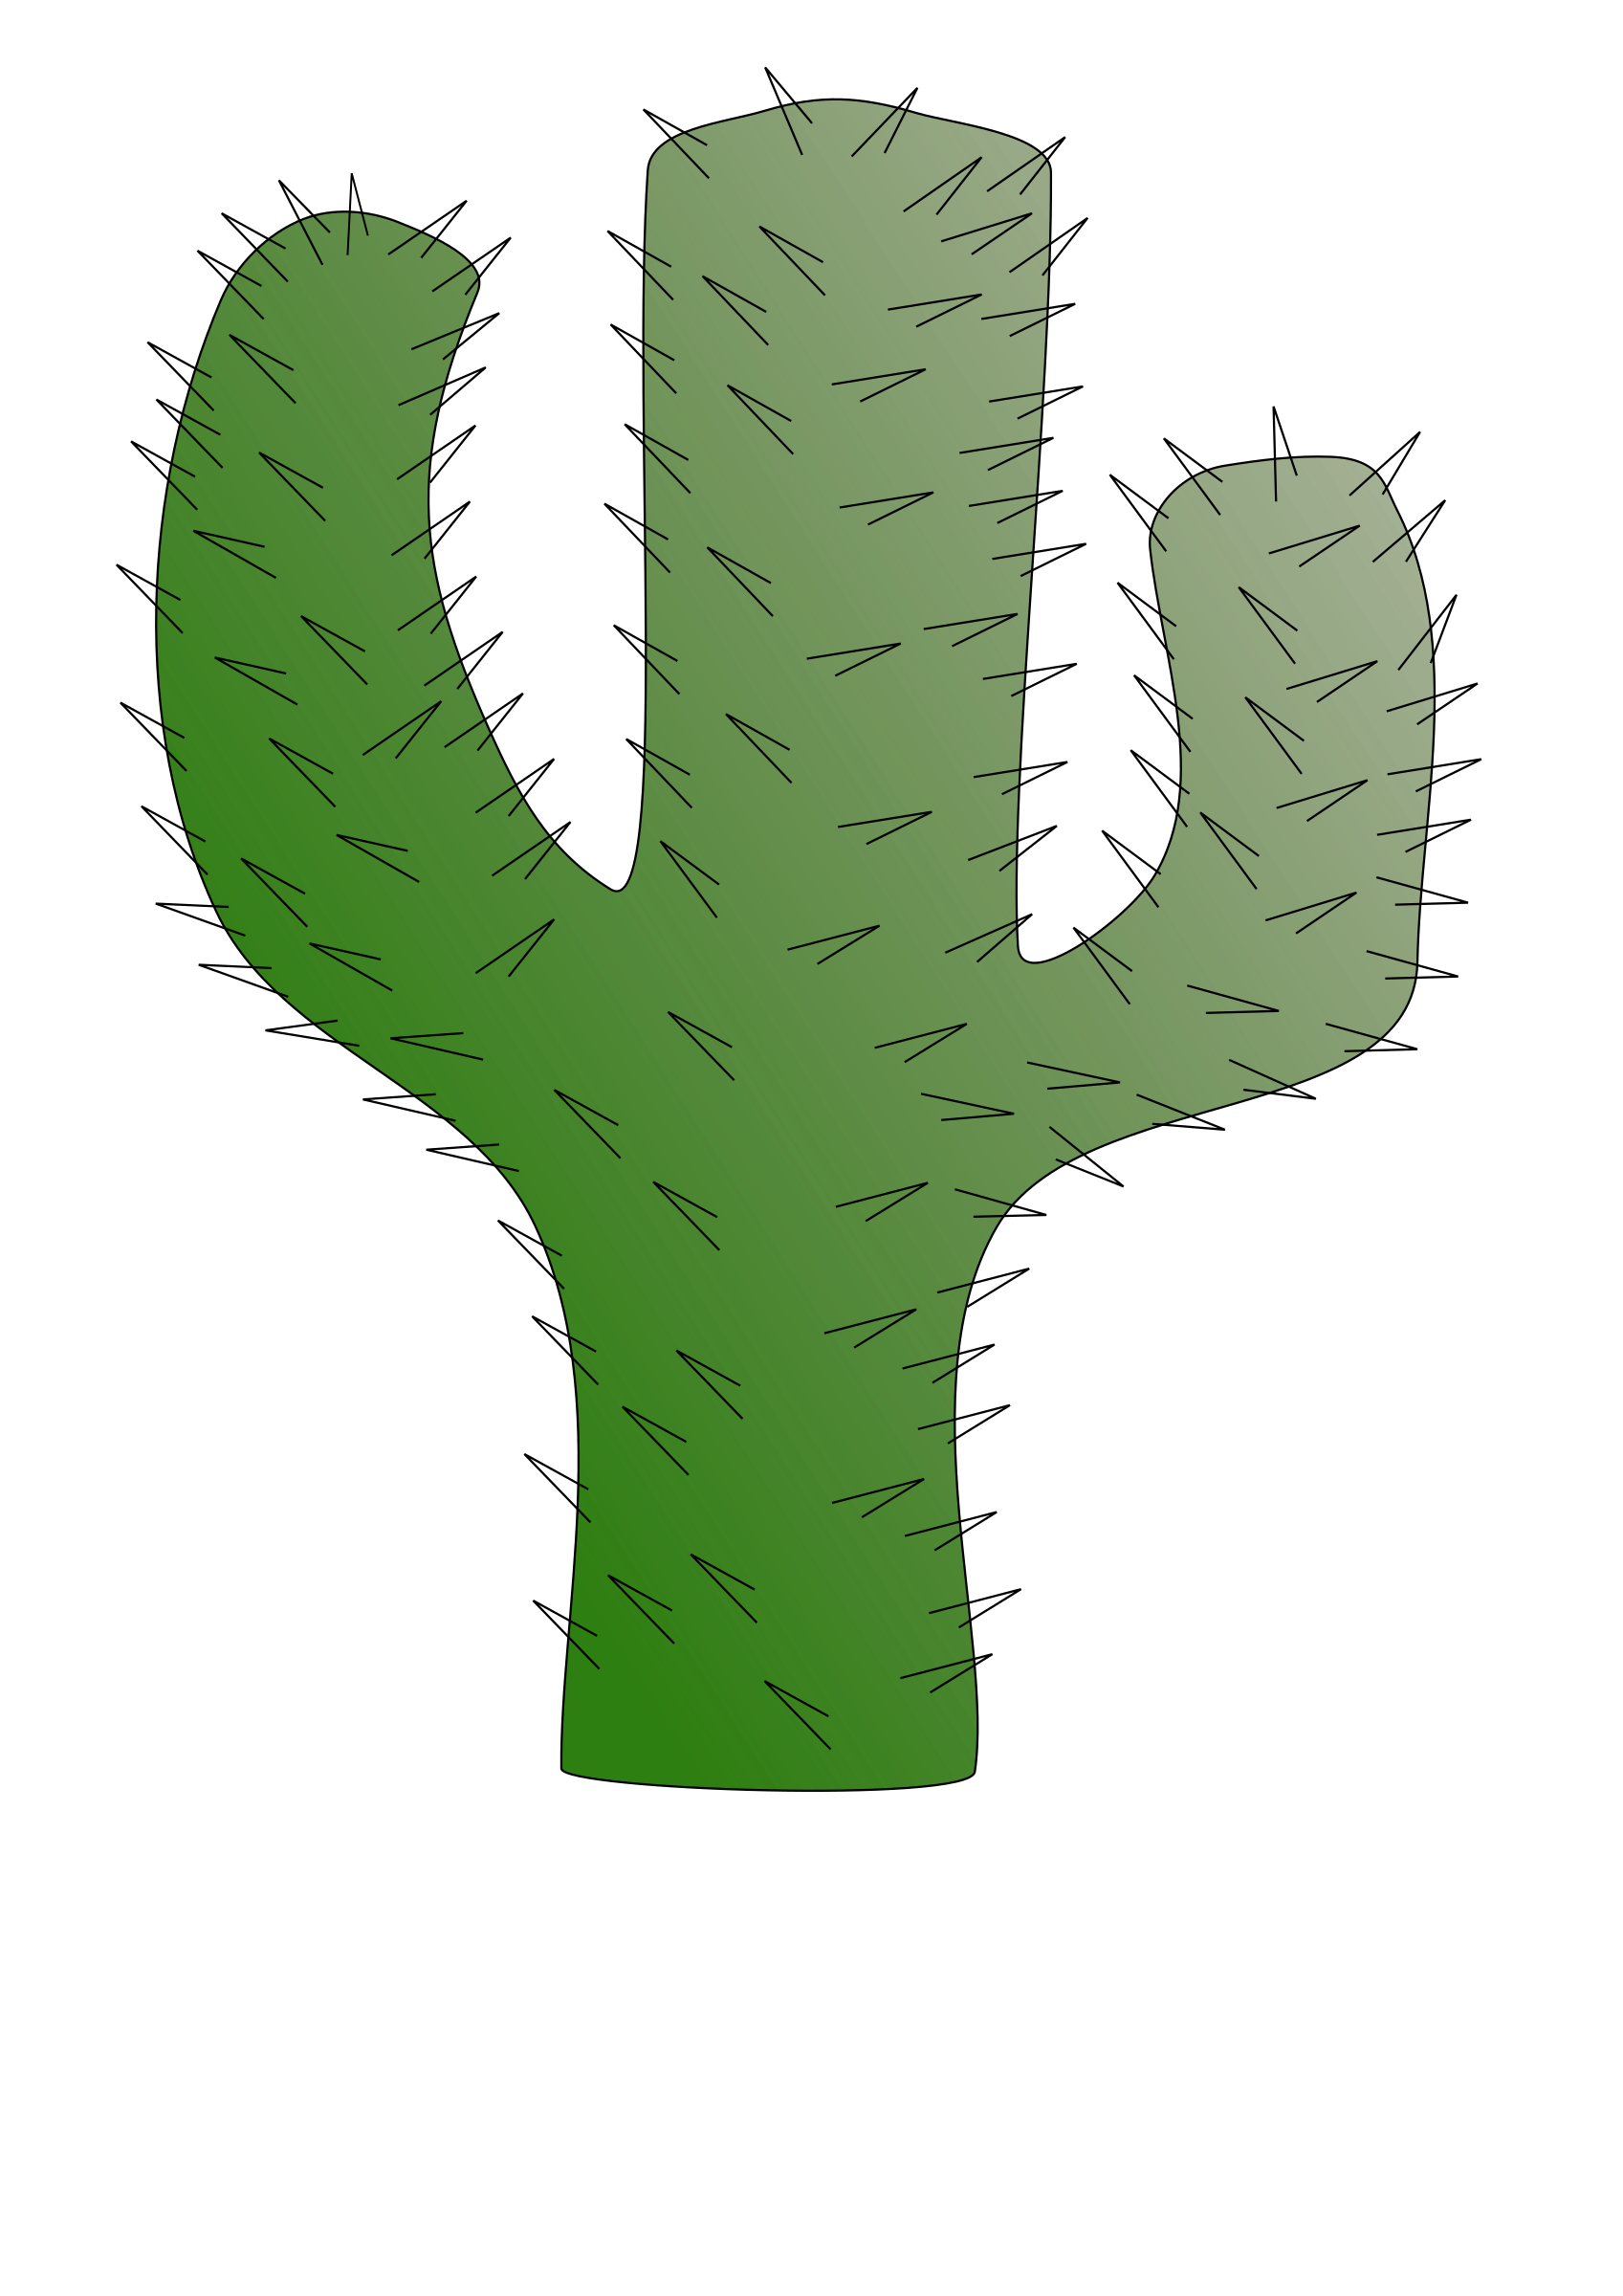 Clipart tree cactus. 